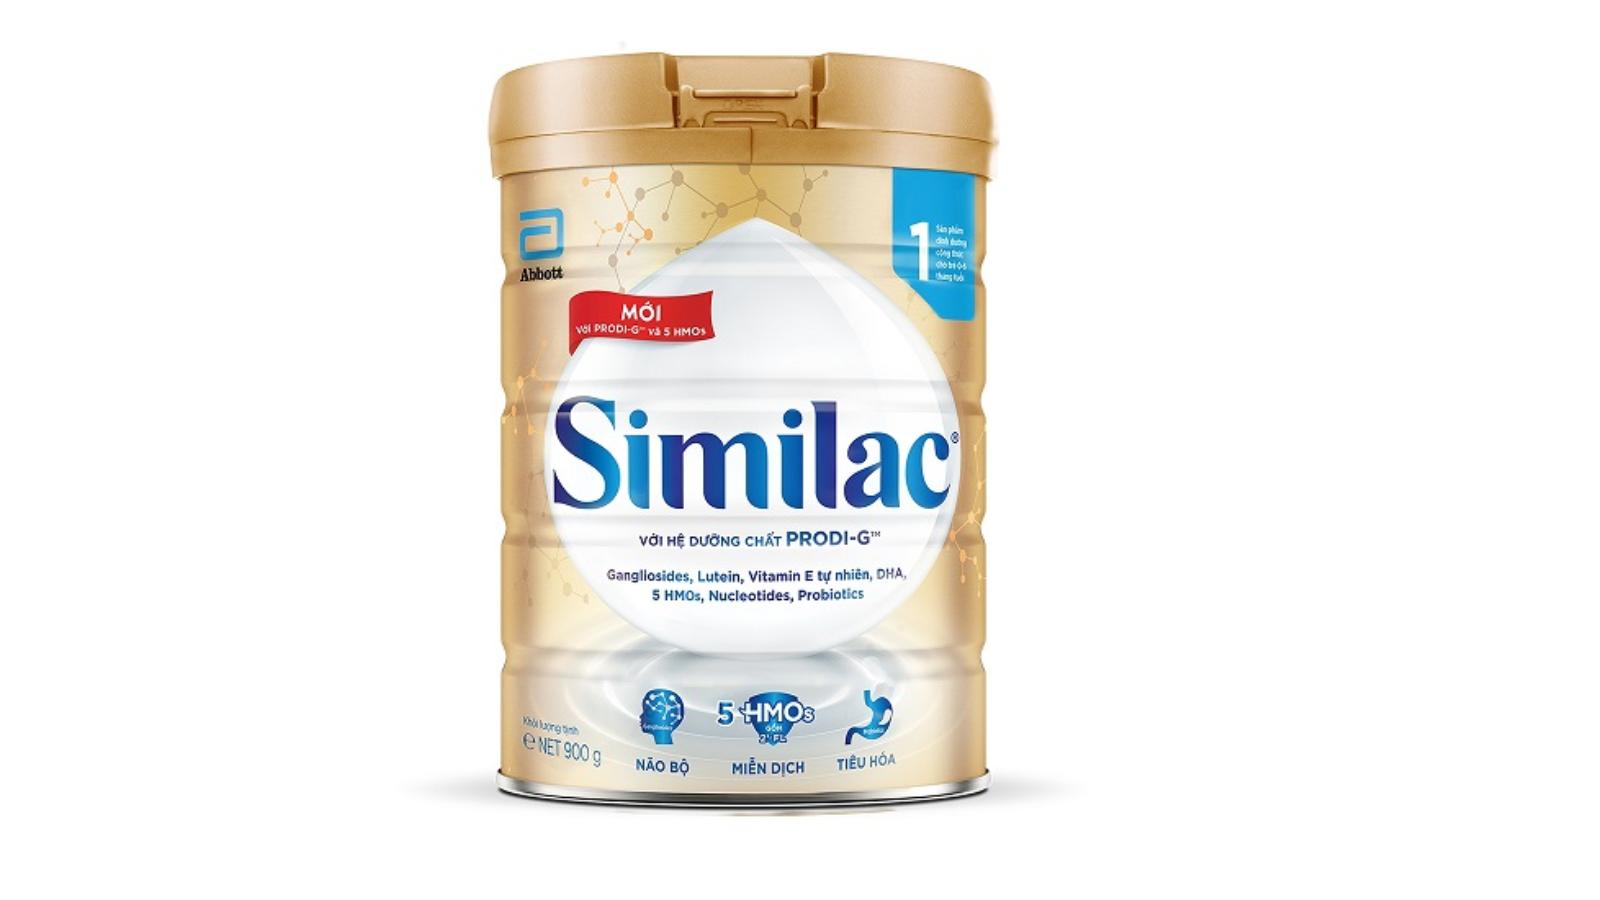 Sữa Similac Newborn